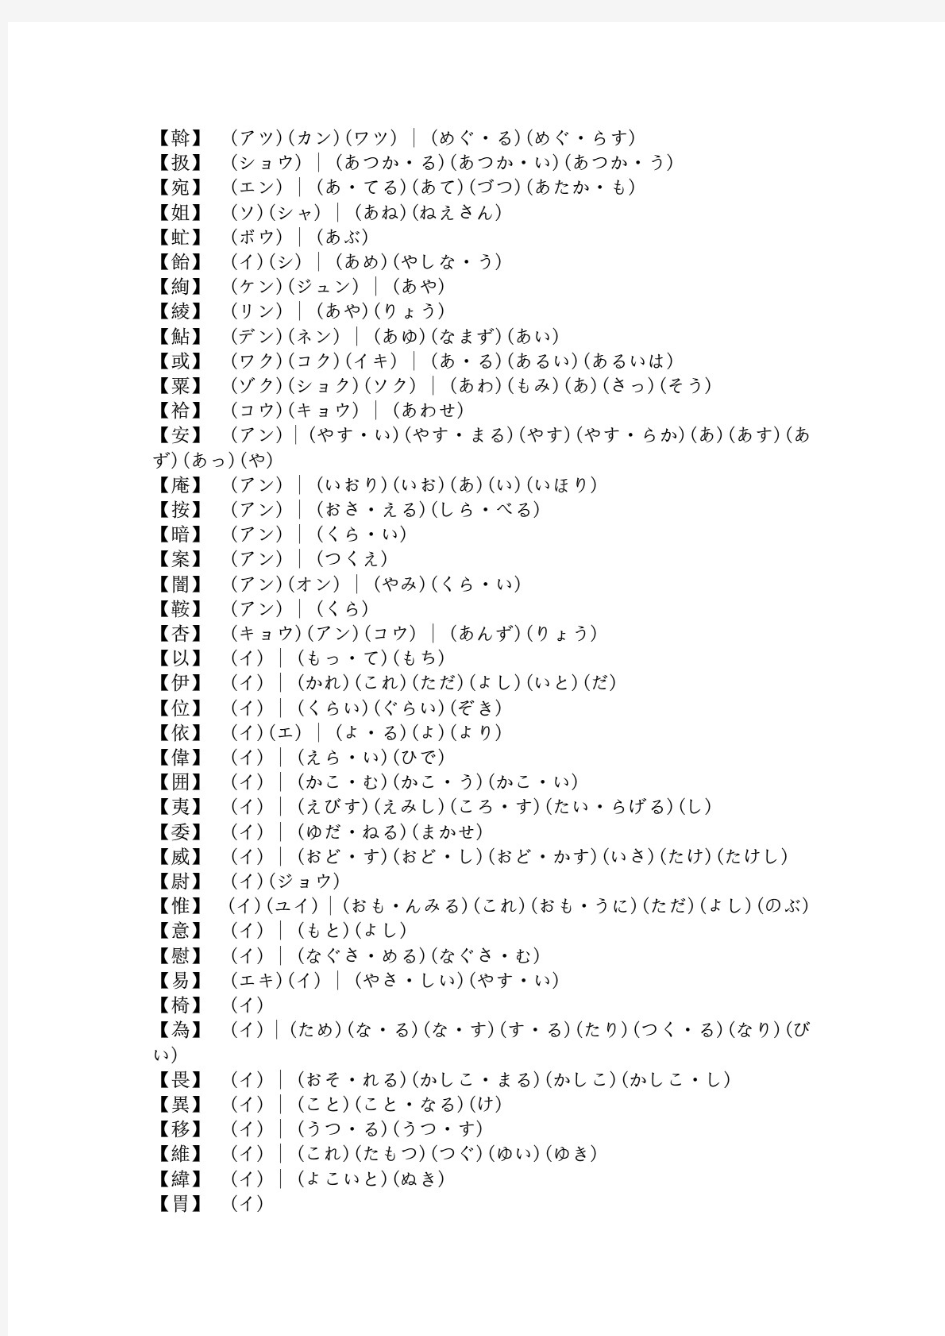 日本语汉字发音一览表